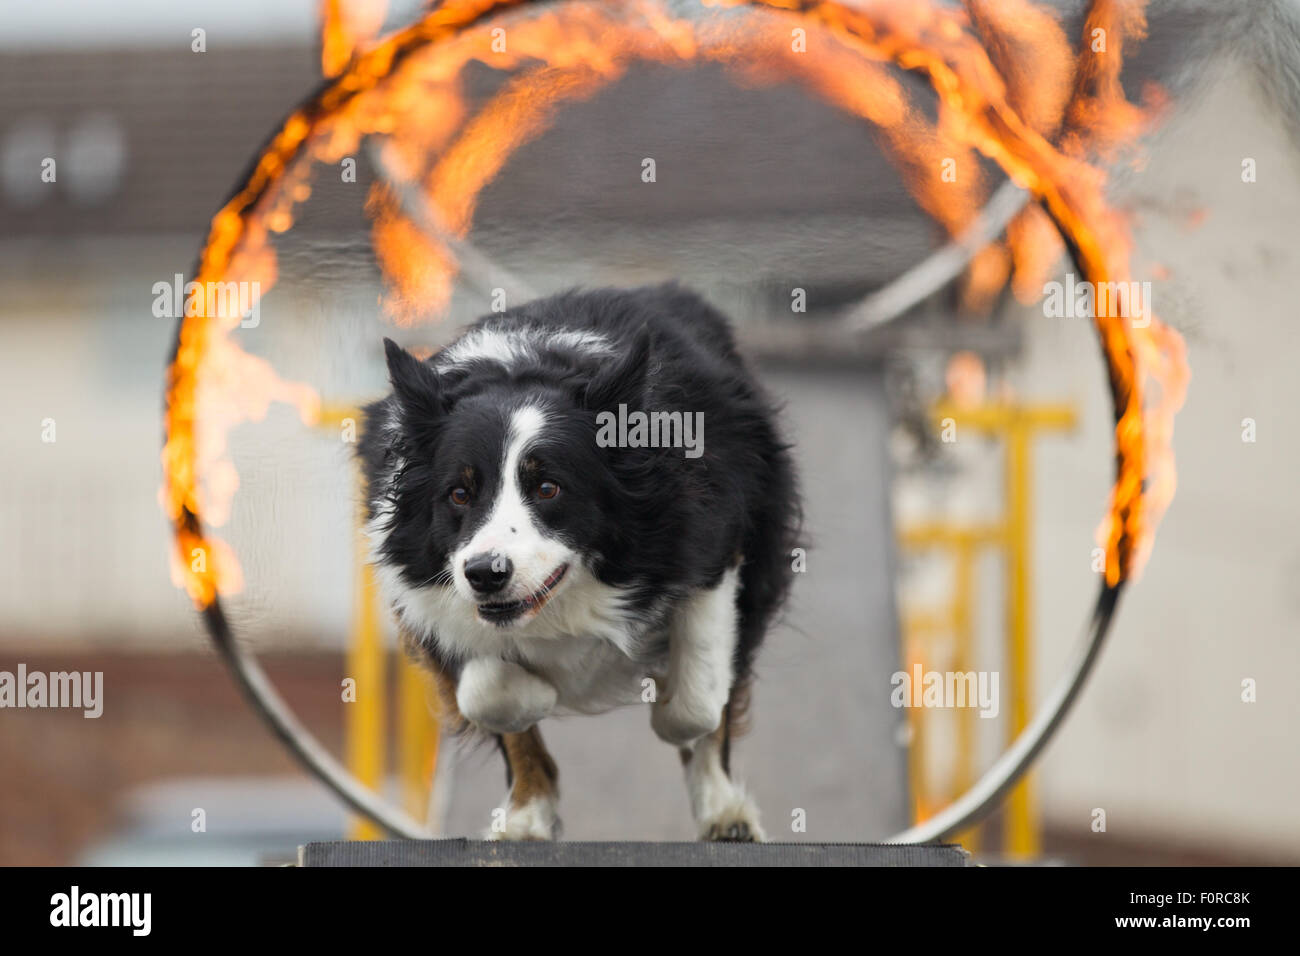 Un chien saute à travers un cerceau enflammé pendant une agilité afficher Banque D'Images